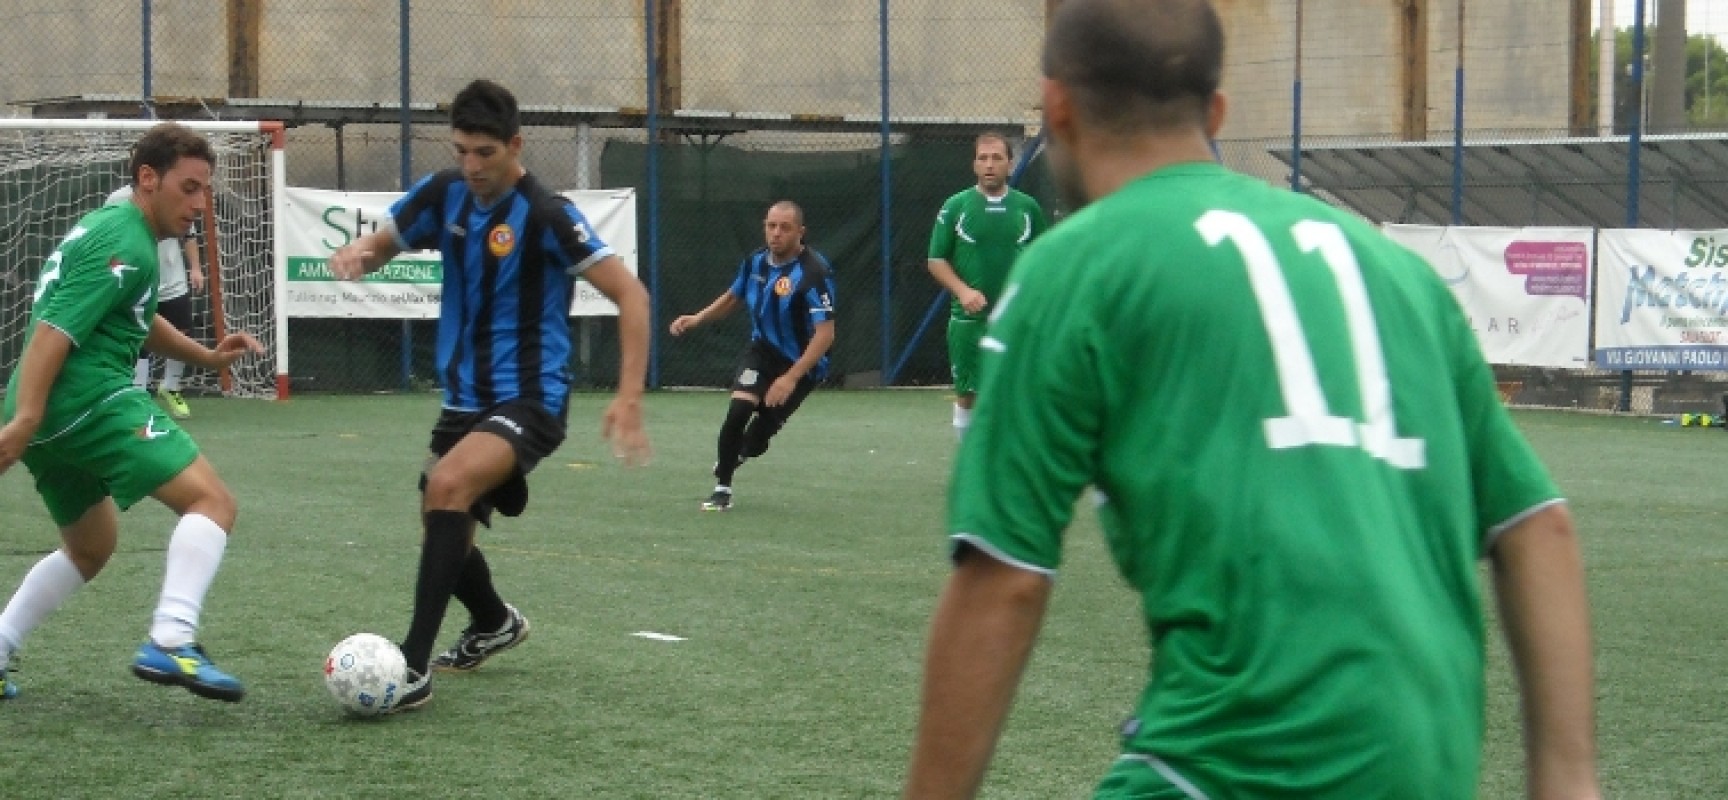 Coppa Italia serie C, ottimo esordio per il Santos Club